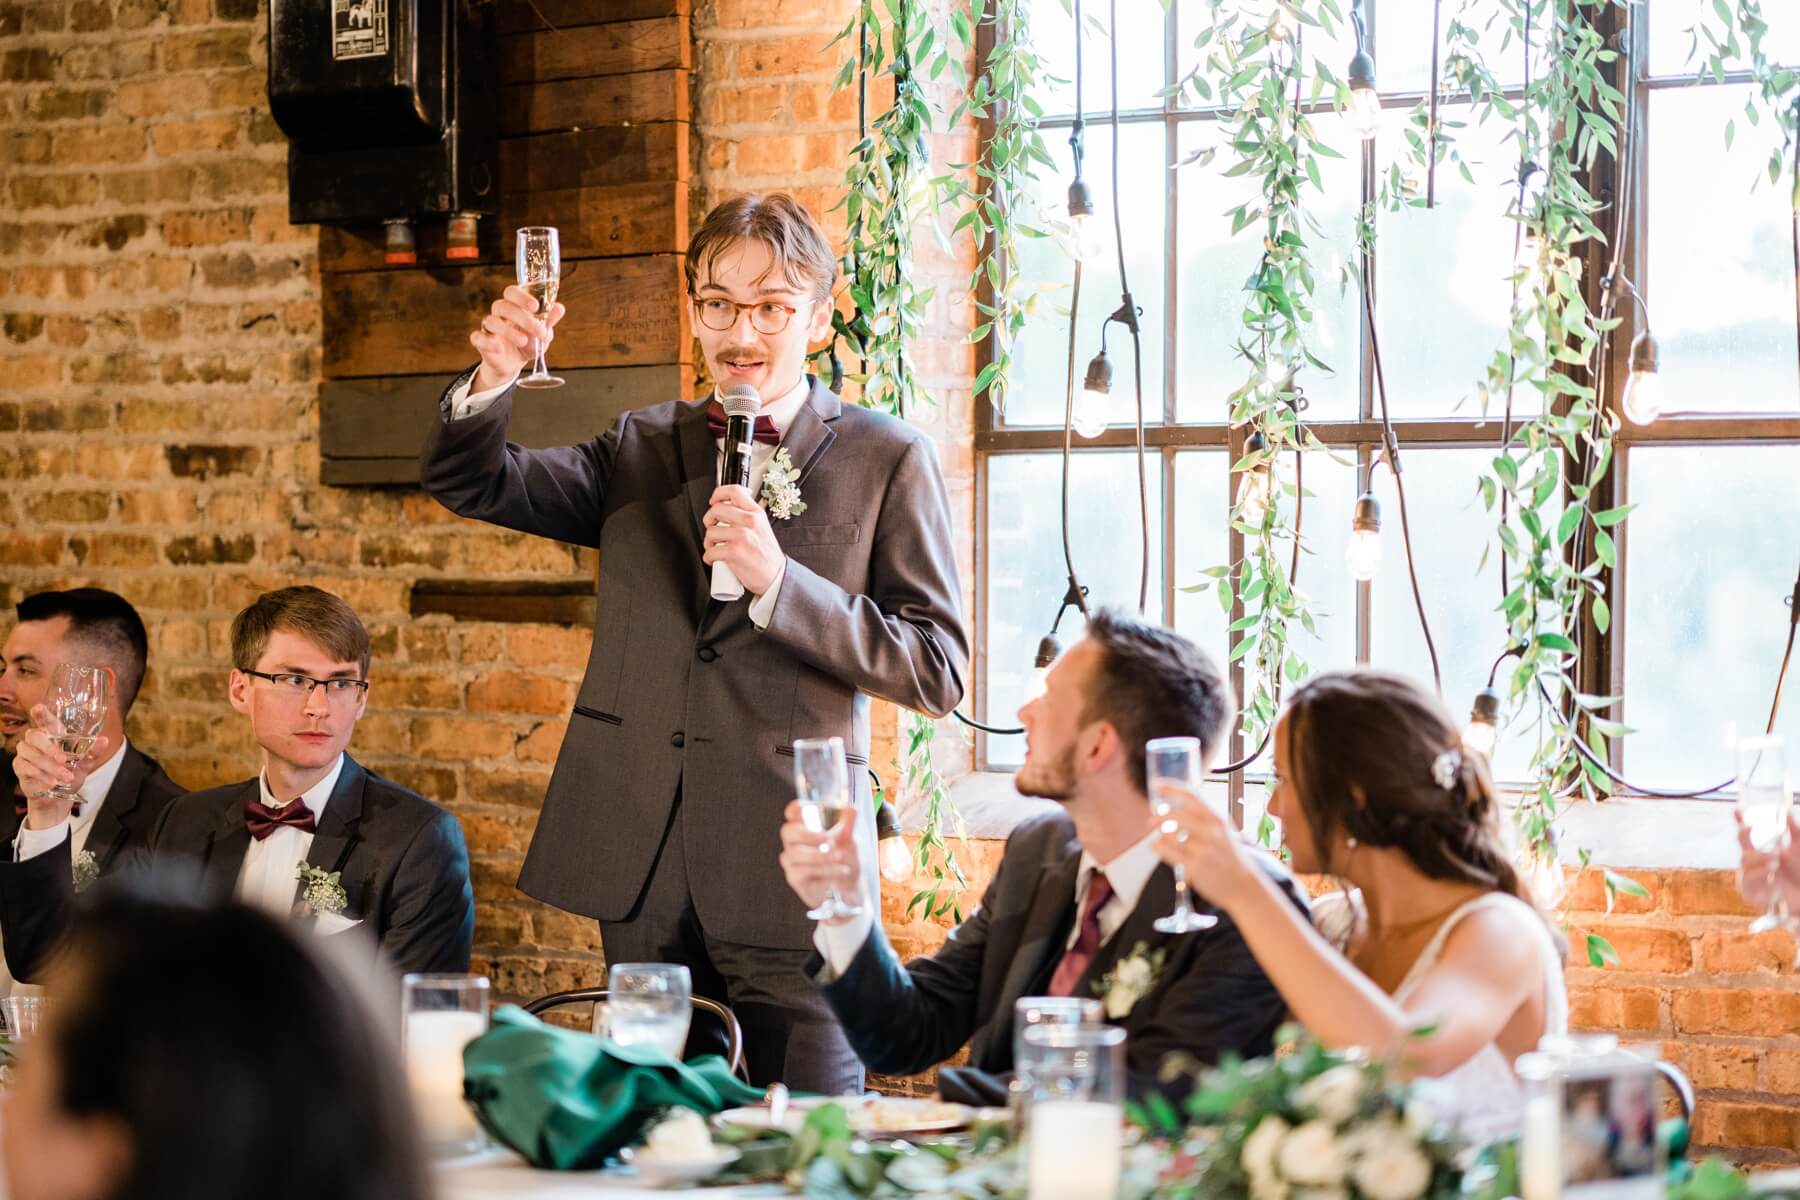 Best man giving speech at wedding reception